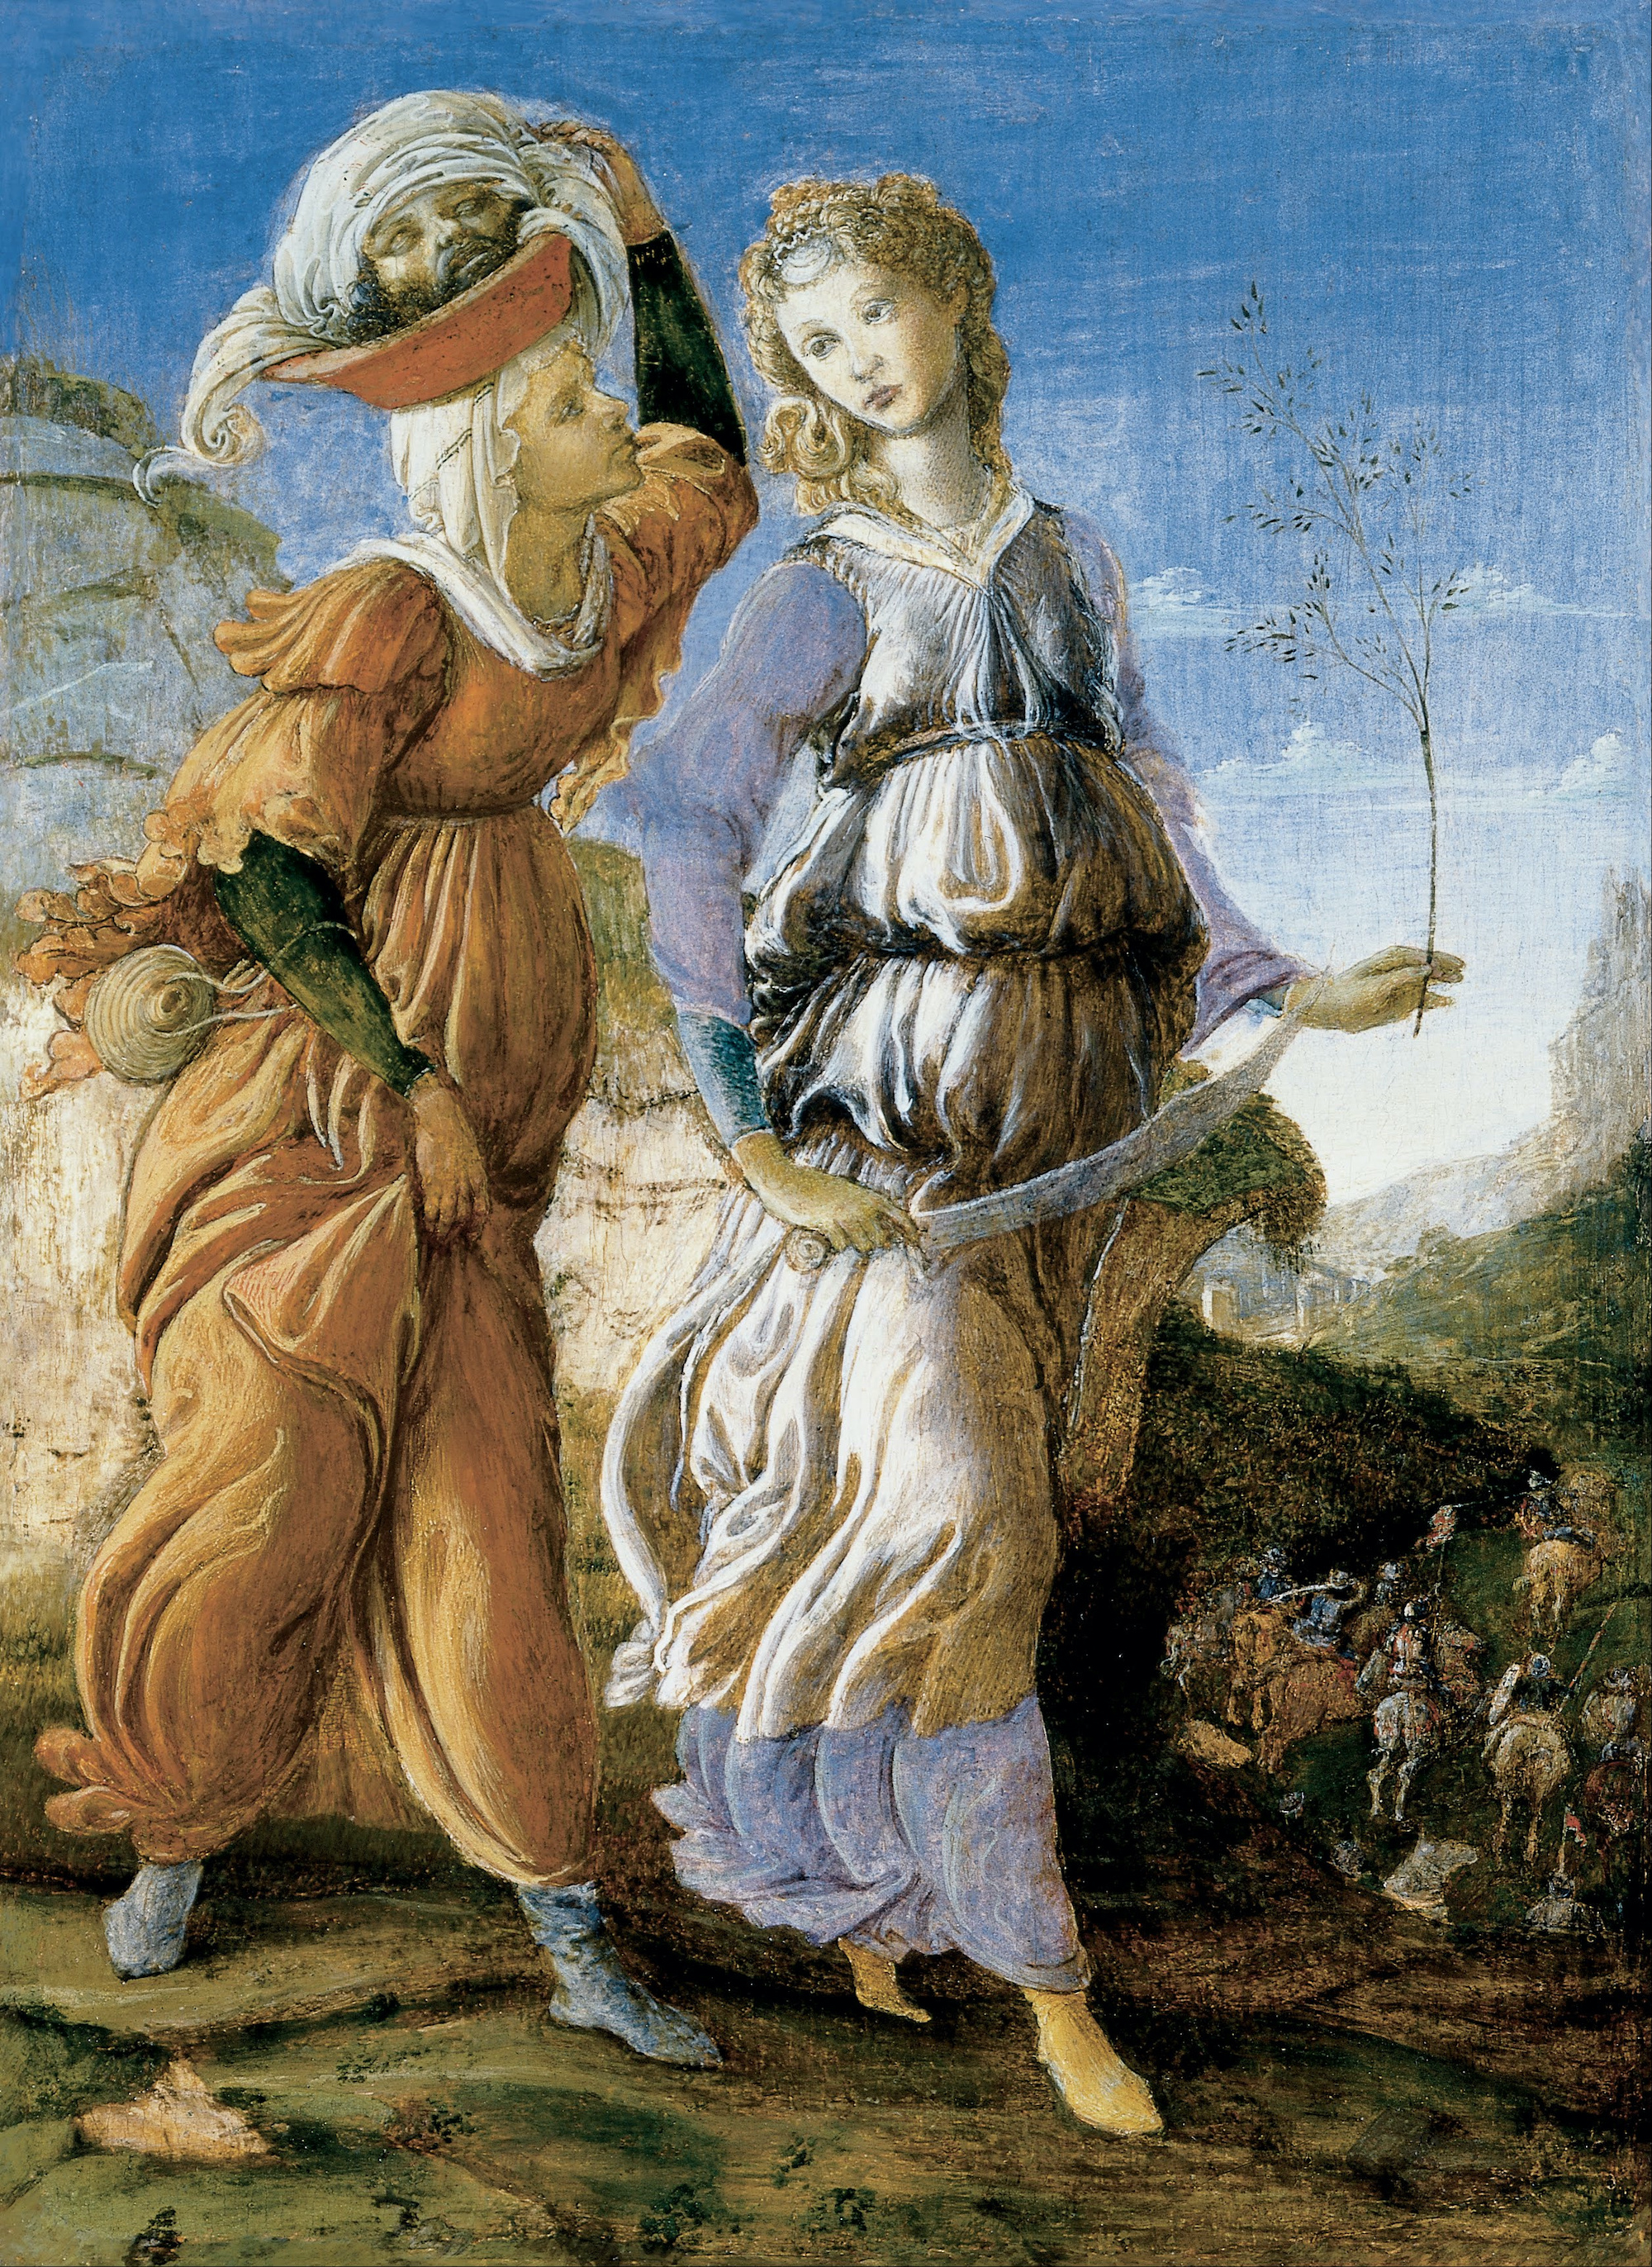 Judith avec la Tête d'Holopherne by Sandro Botticelli - Env. 1469 - Env. 1470 - 29.2 x 21.6 cm Cincinnati Art Museum